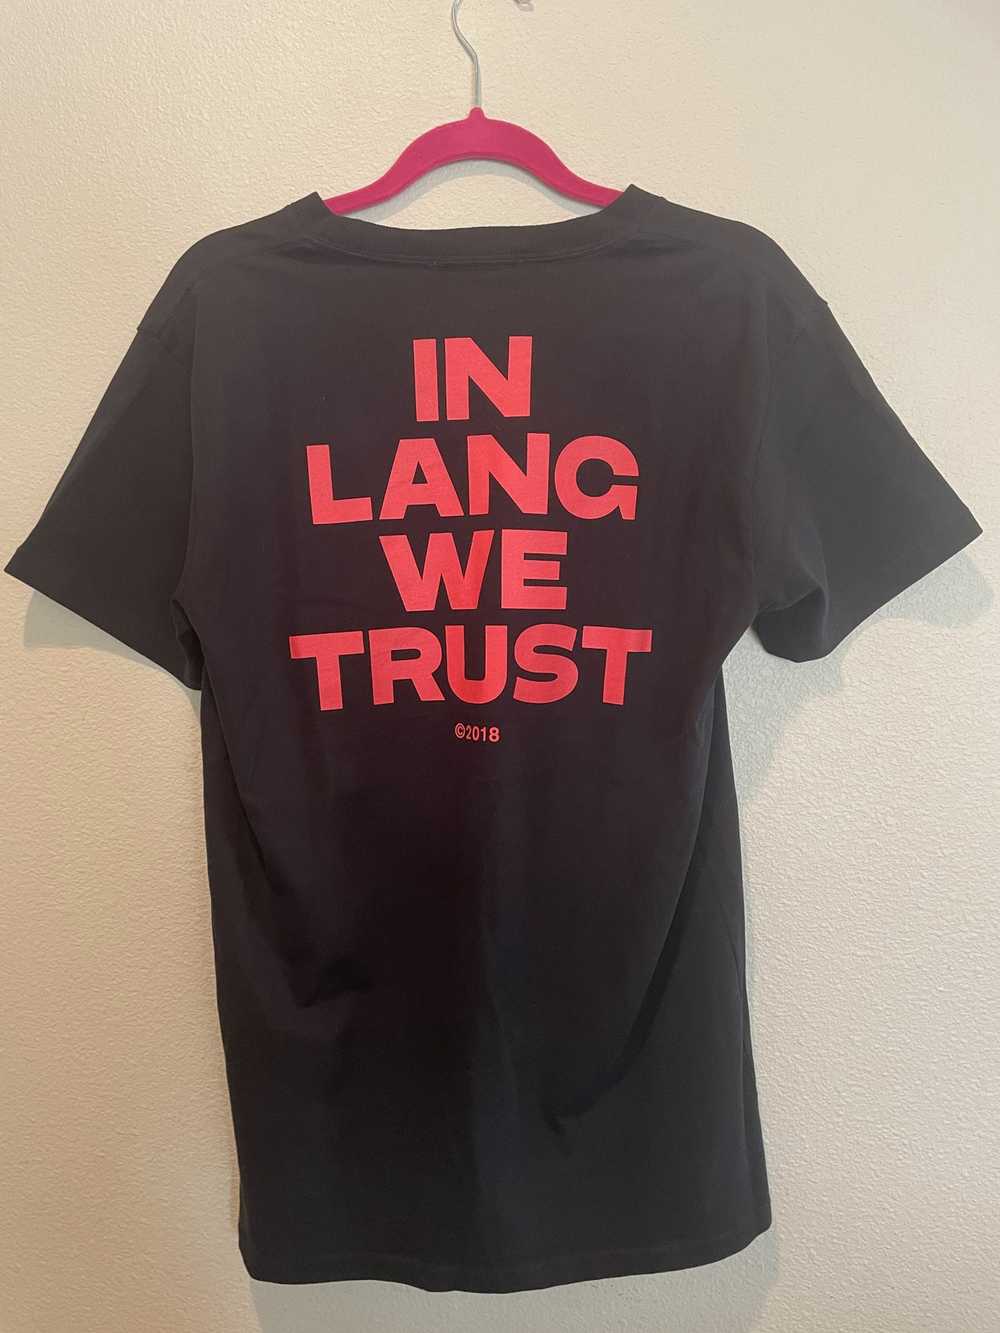 Helmut Lang Helmut Lang t-shirt (In Lang We Trust) - image 4